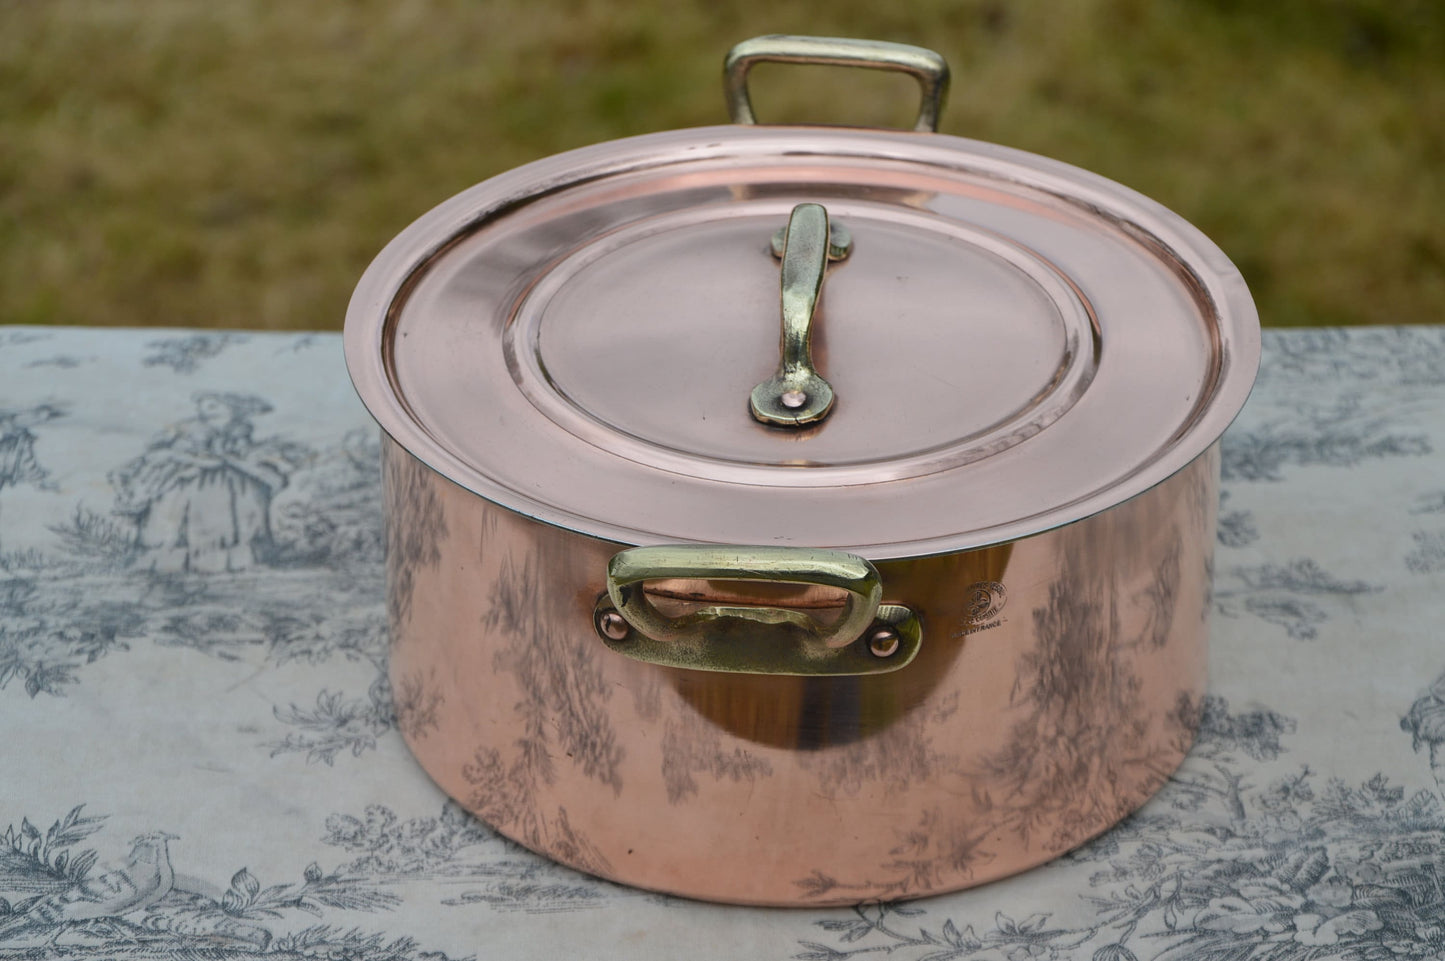 Metaux Ouvres Vesoul 1mm Copper Casserole Faitout Oval Pot French Dutch Oven Lid 1mm 20cm 8"  Good Solid Vintage Copper Pan